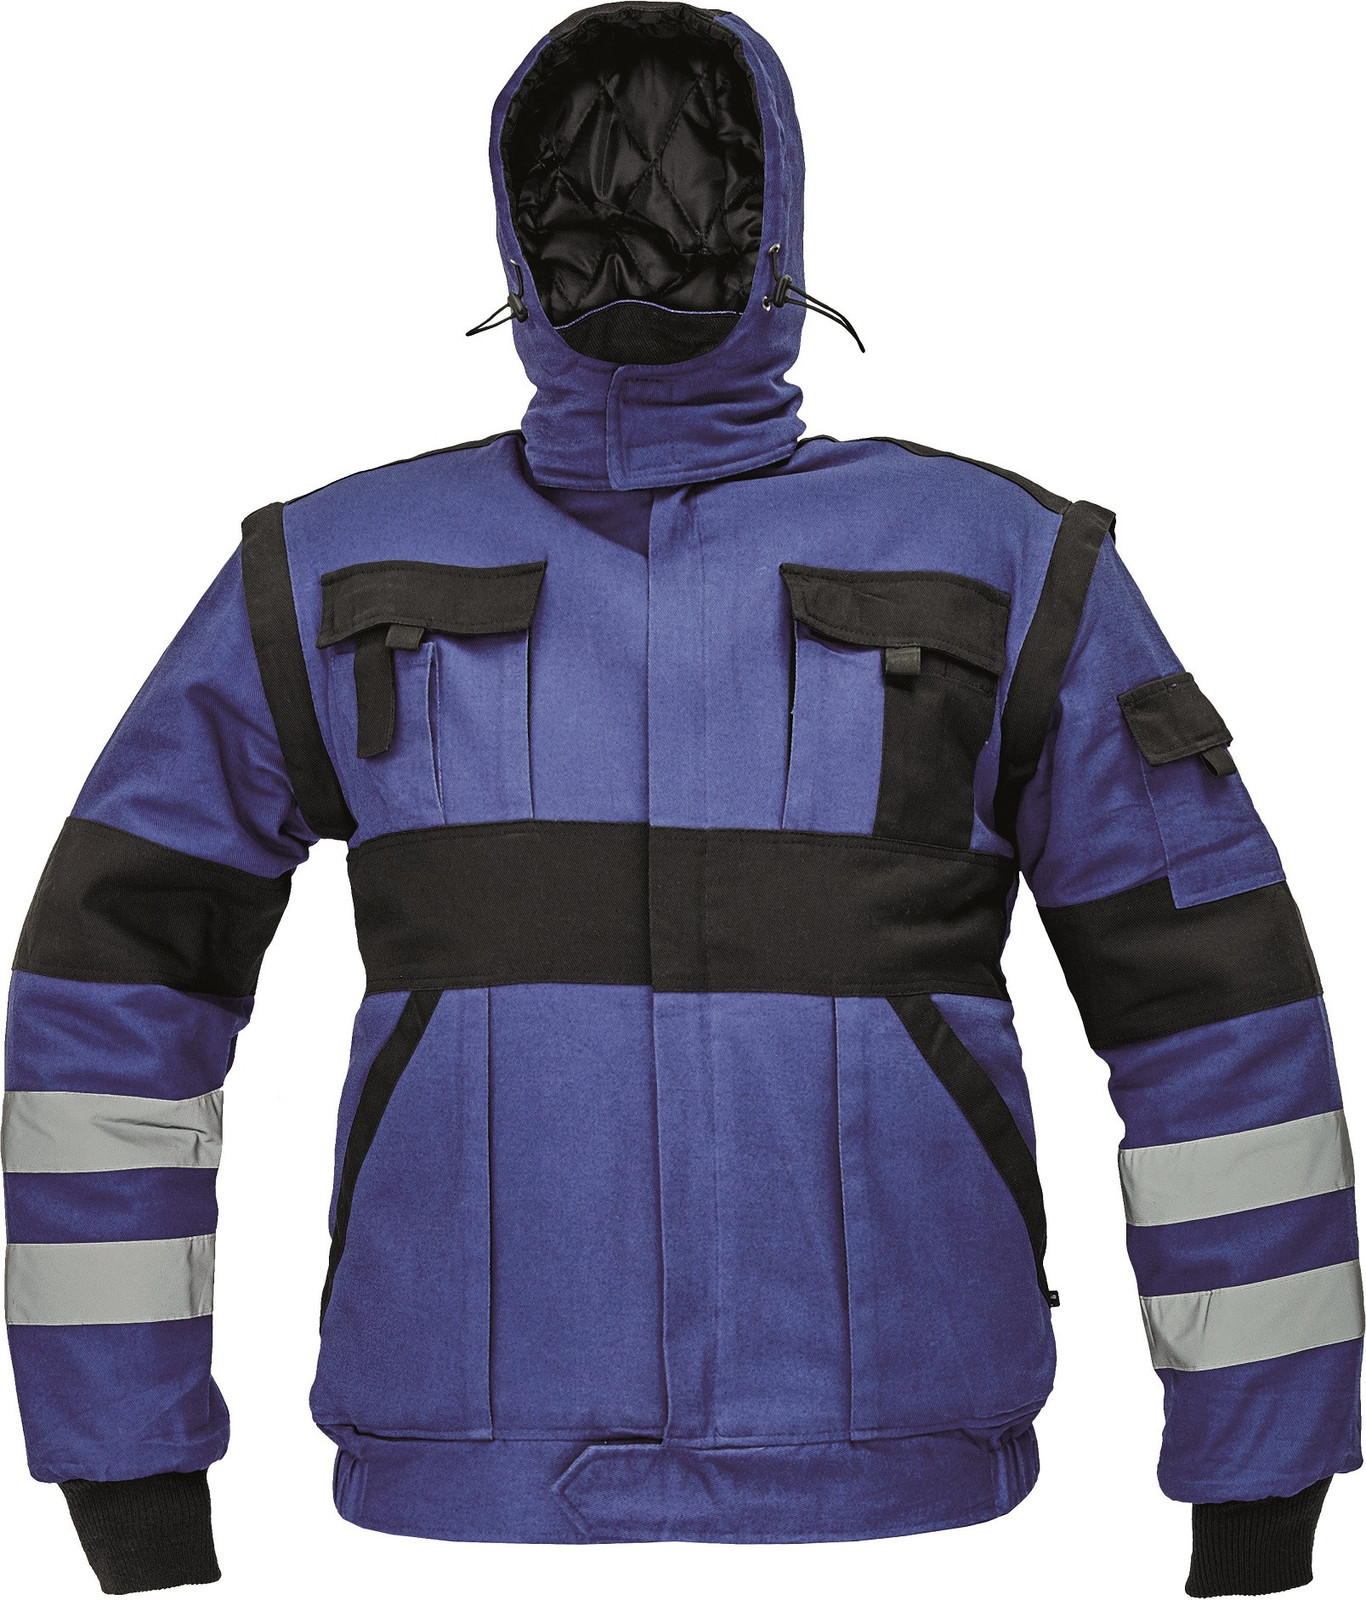 Zateplená montérková bunda Max Winter s reflexnými pruhmi 2v1 - veľkosť: 56, farba: modrá/čierna